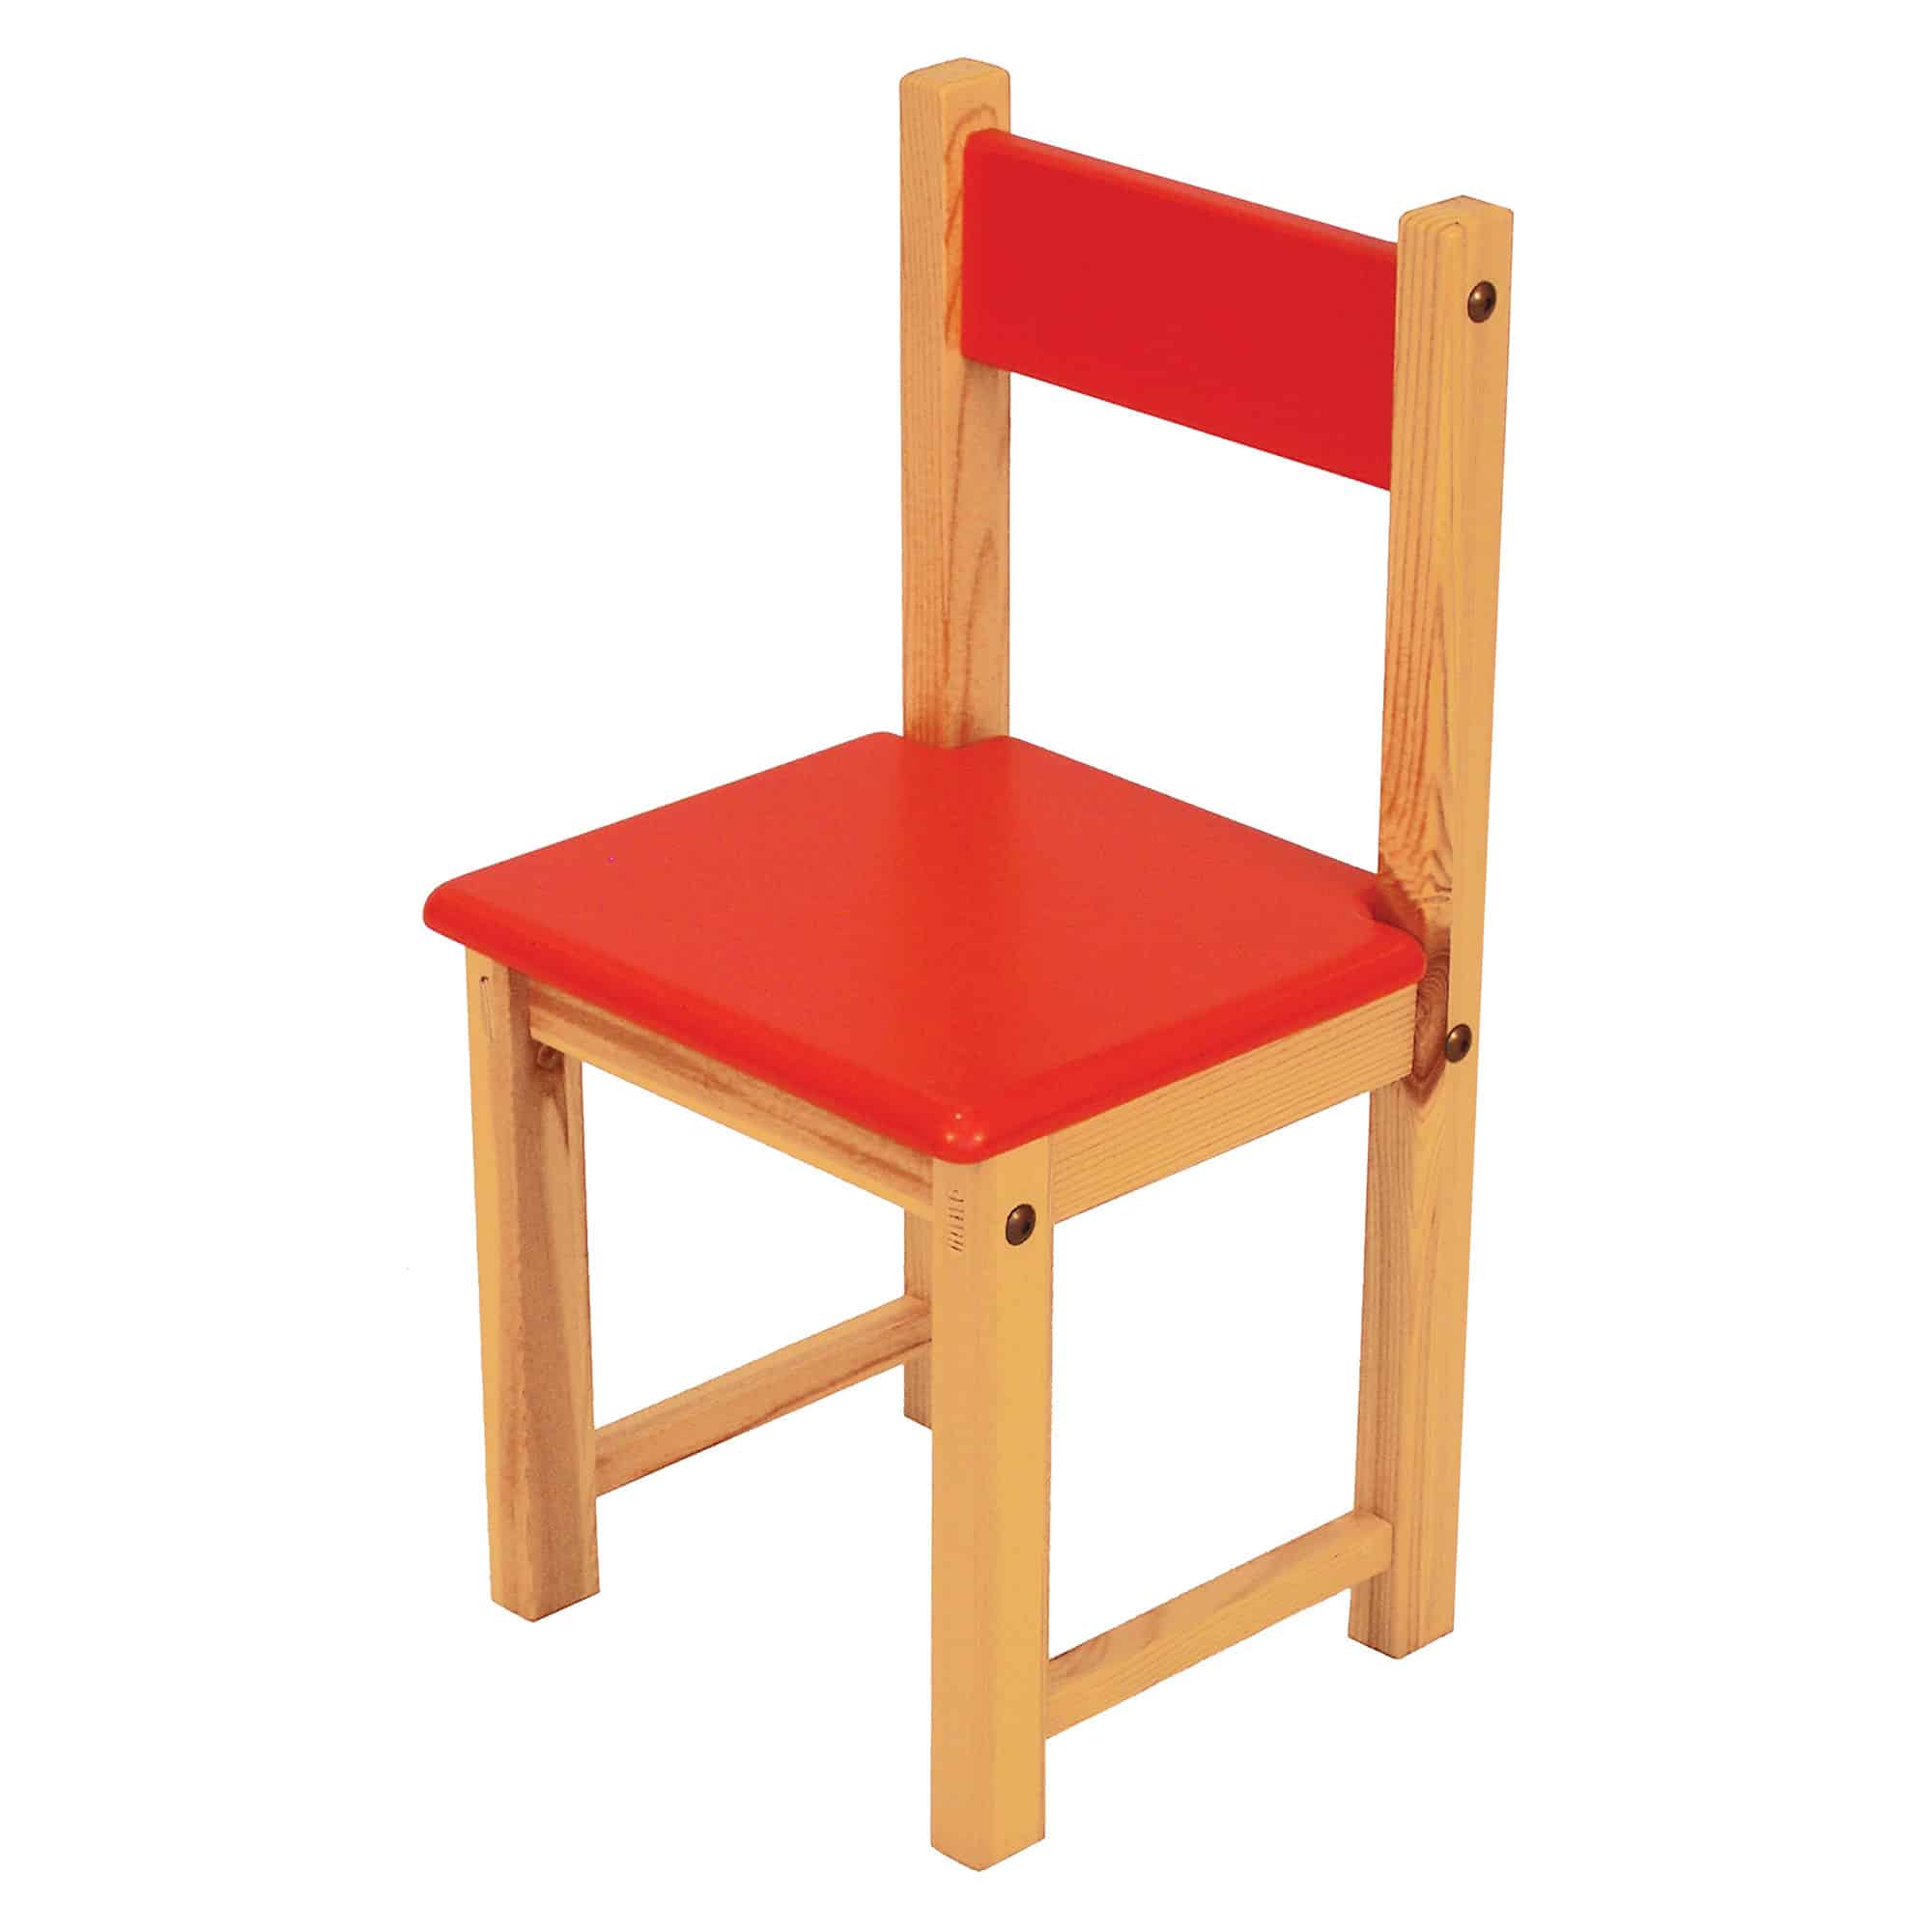 Jolly Kidz - Smart Chair - Wood